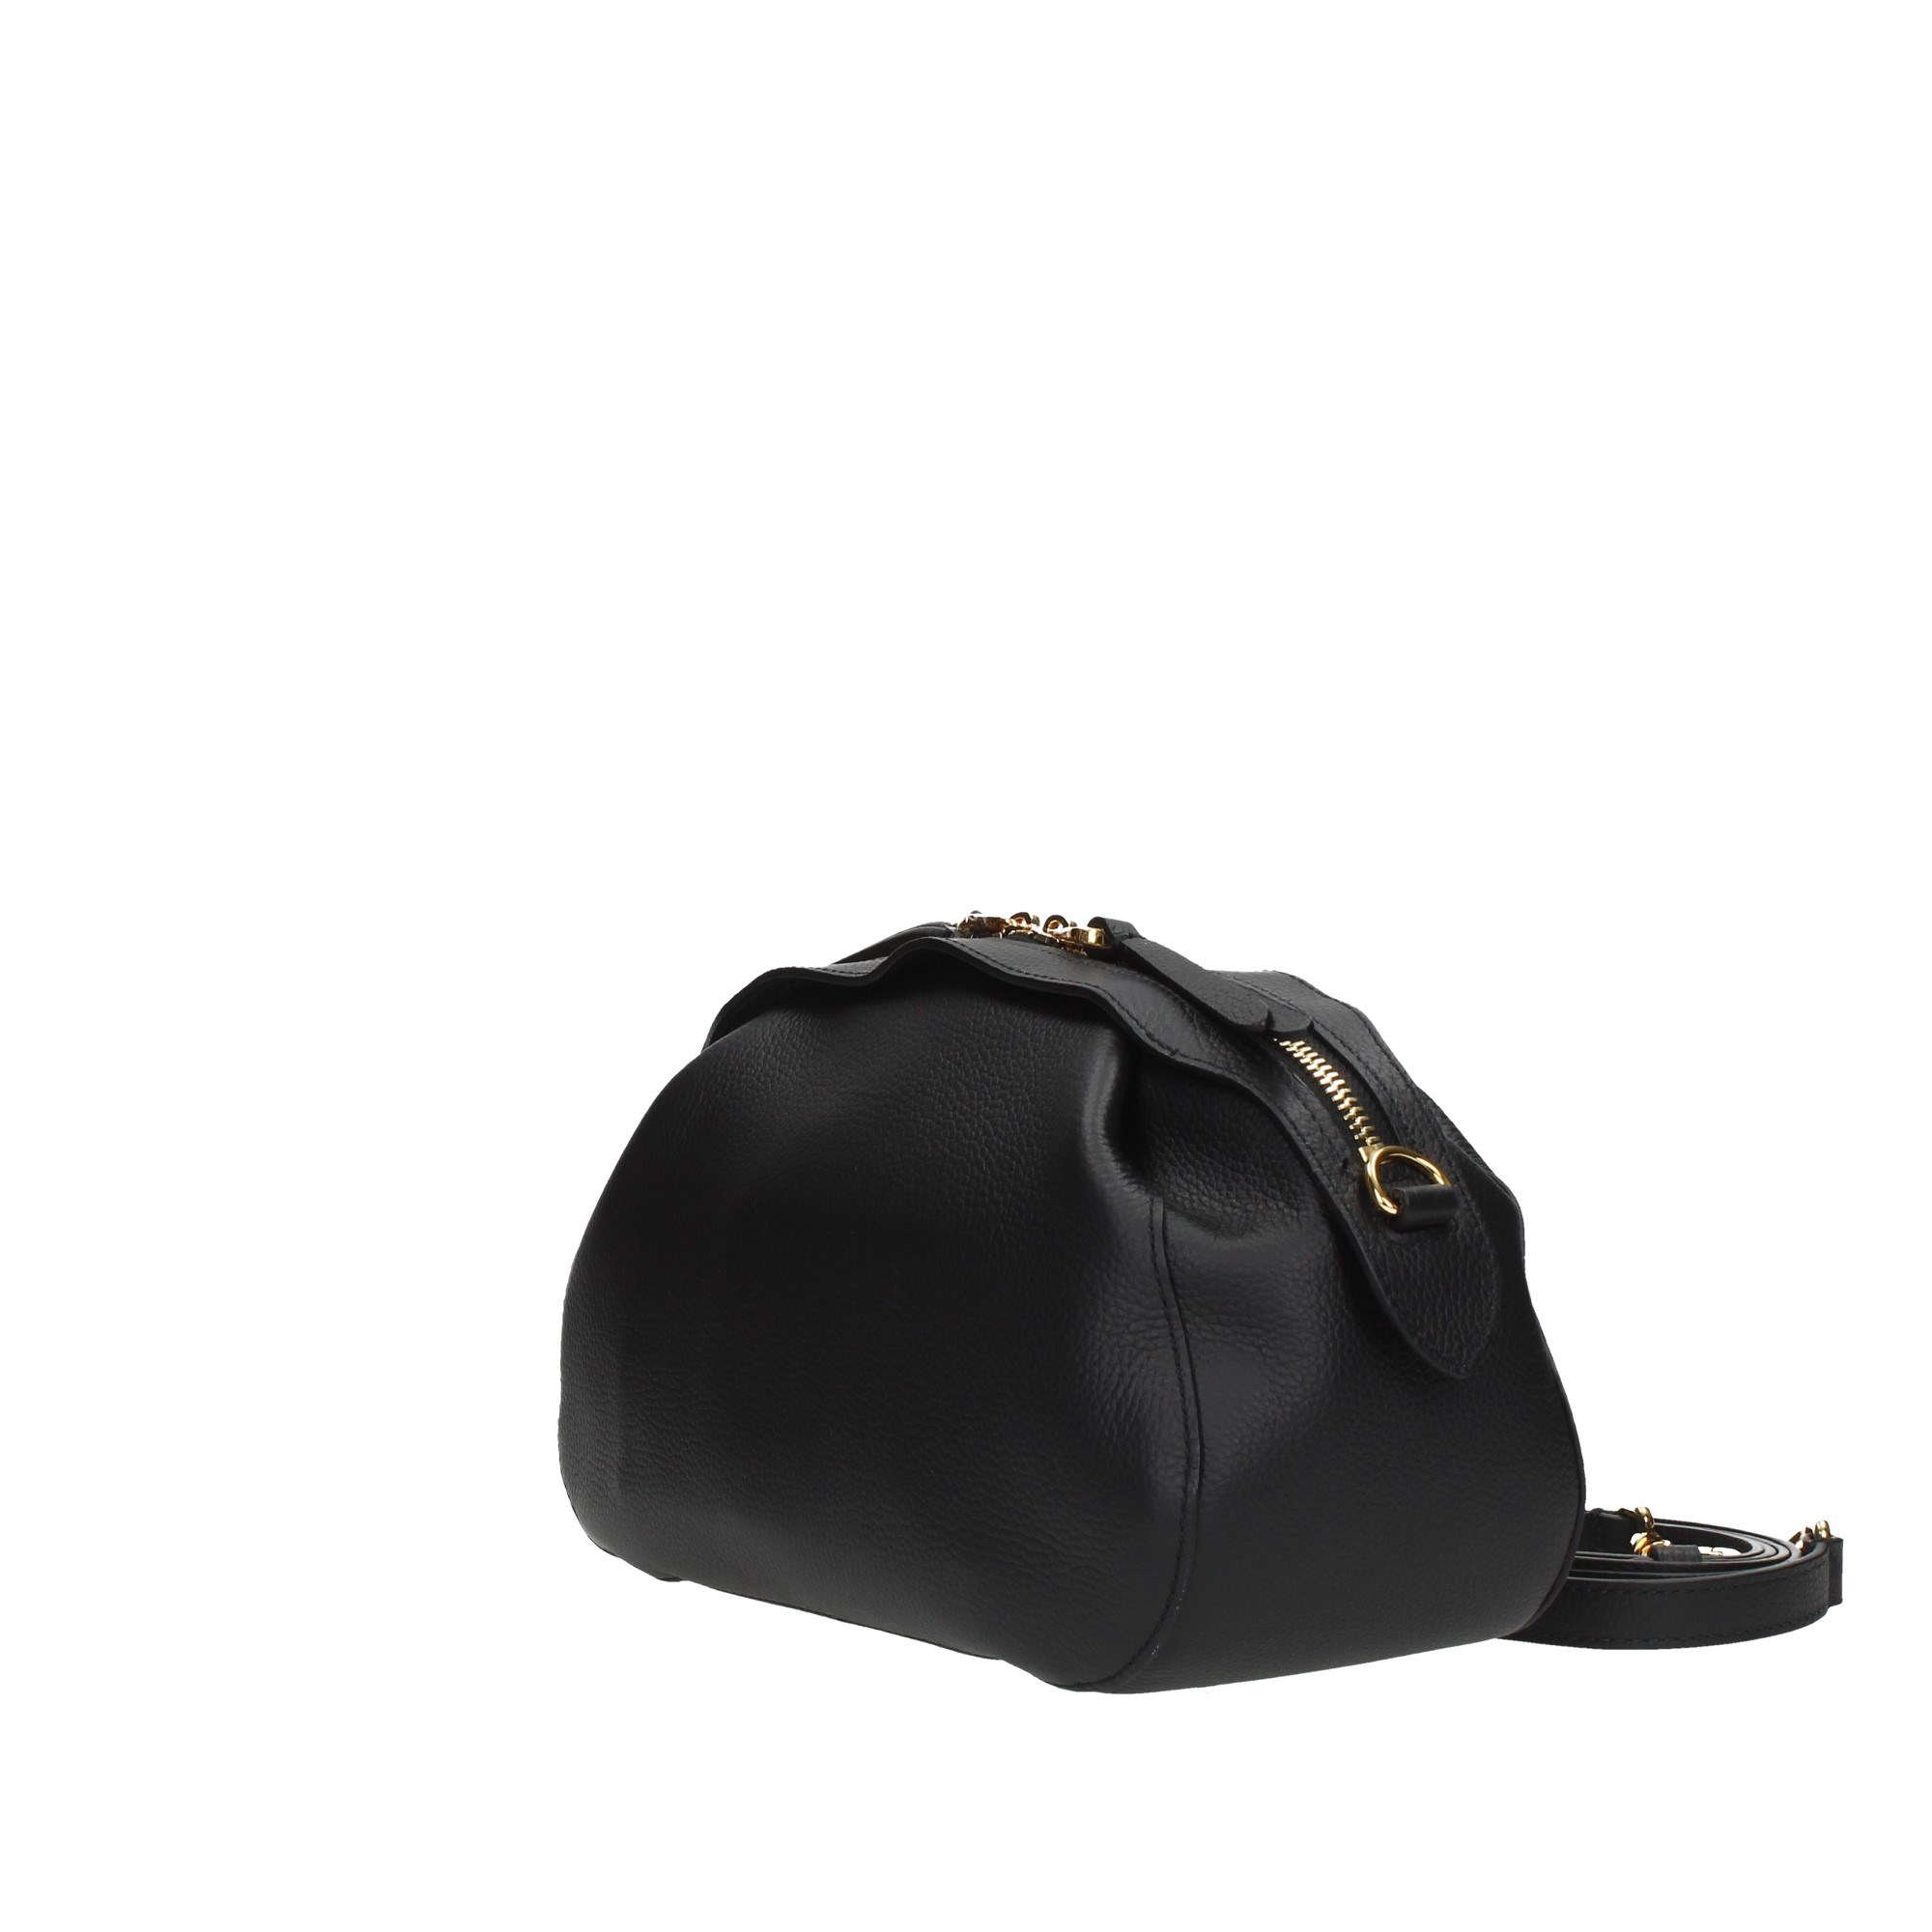 Coccinelle Accessories Women Shoulder Bags P5A 150101